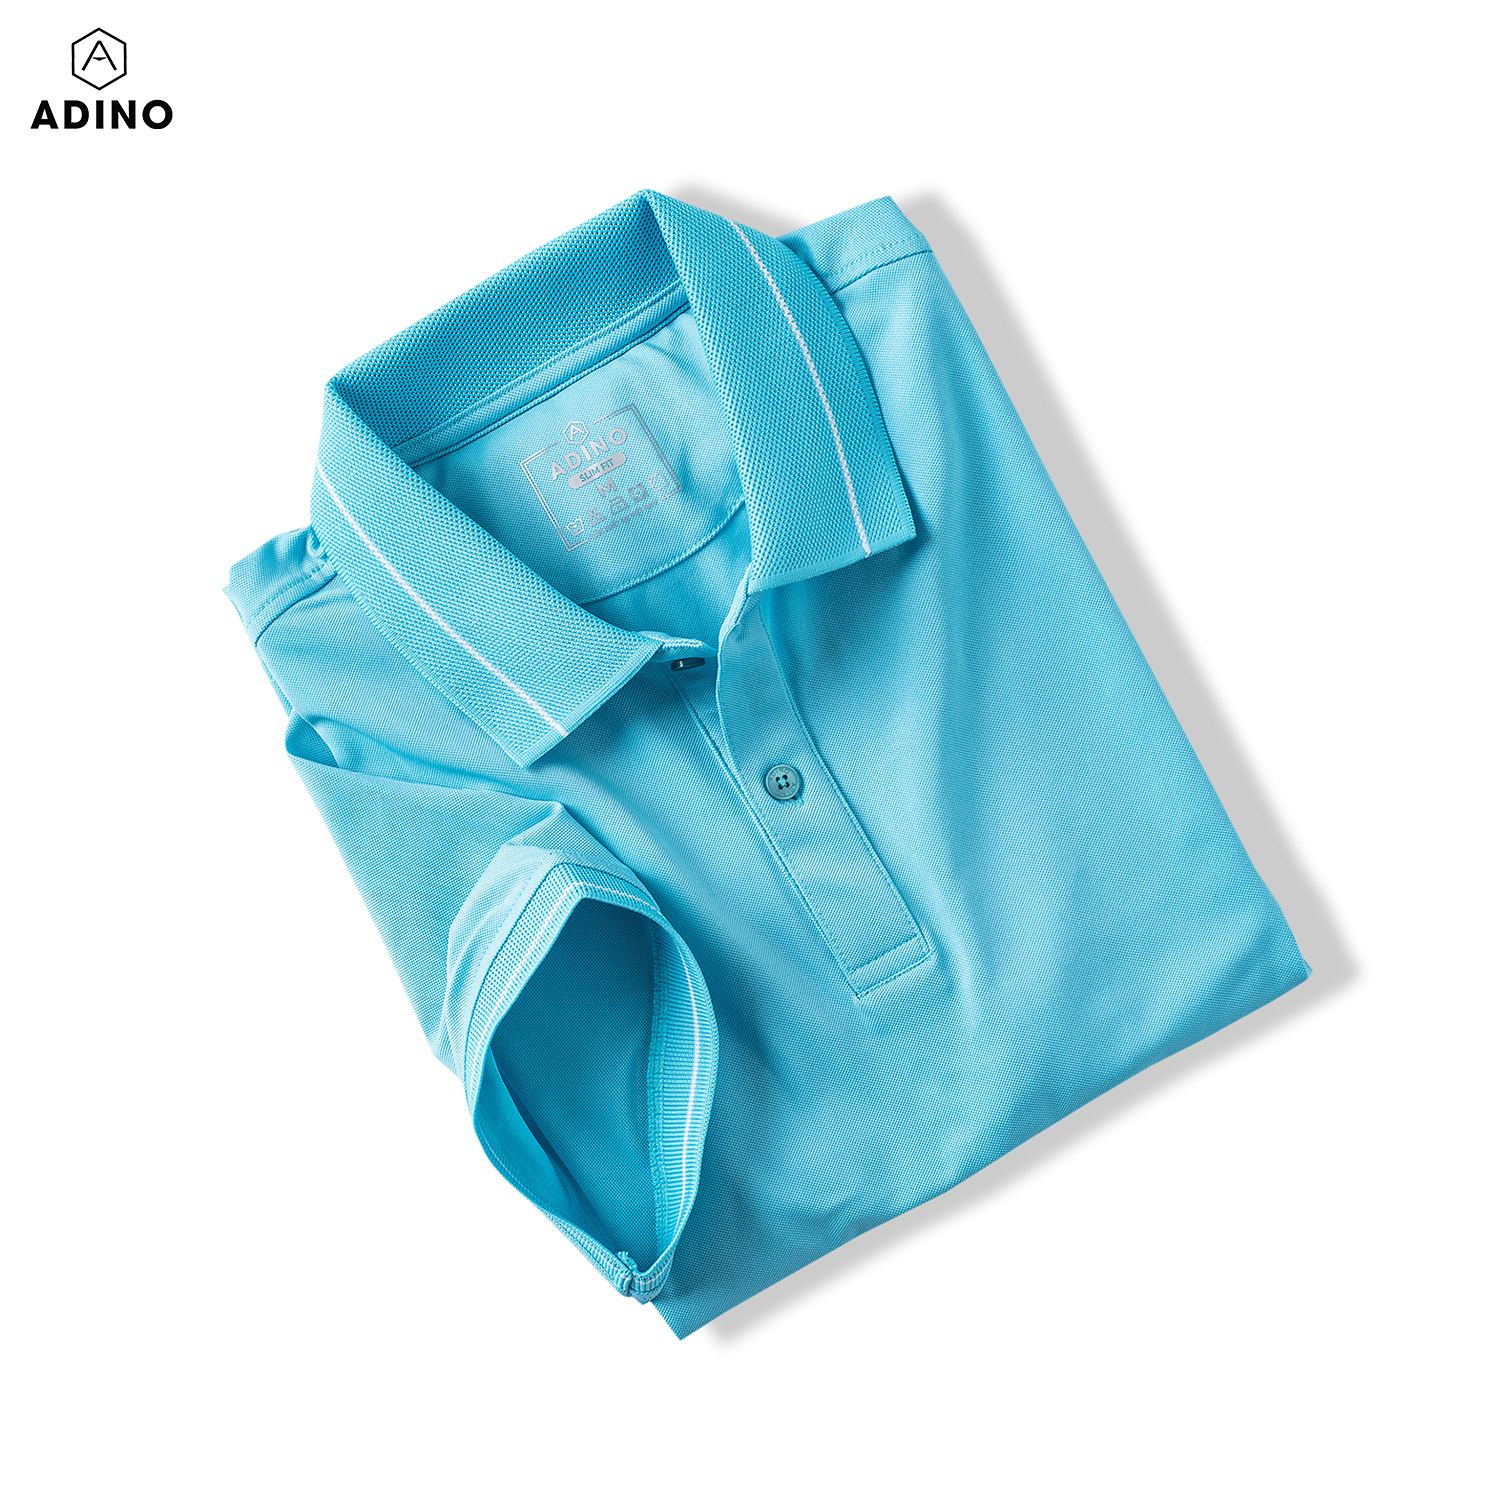 Áo polo nữ màu xanh ngọc (xanh thiên thanh) phối viền ADINO vải polyester cotton không bai xù dáng công sở slimfit hơi ôm trẻ trung APN04